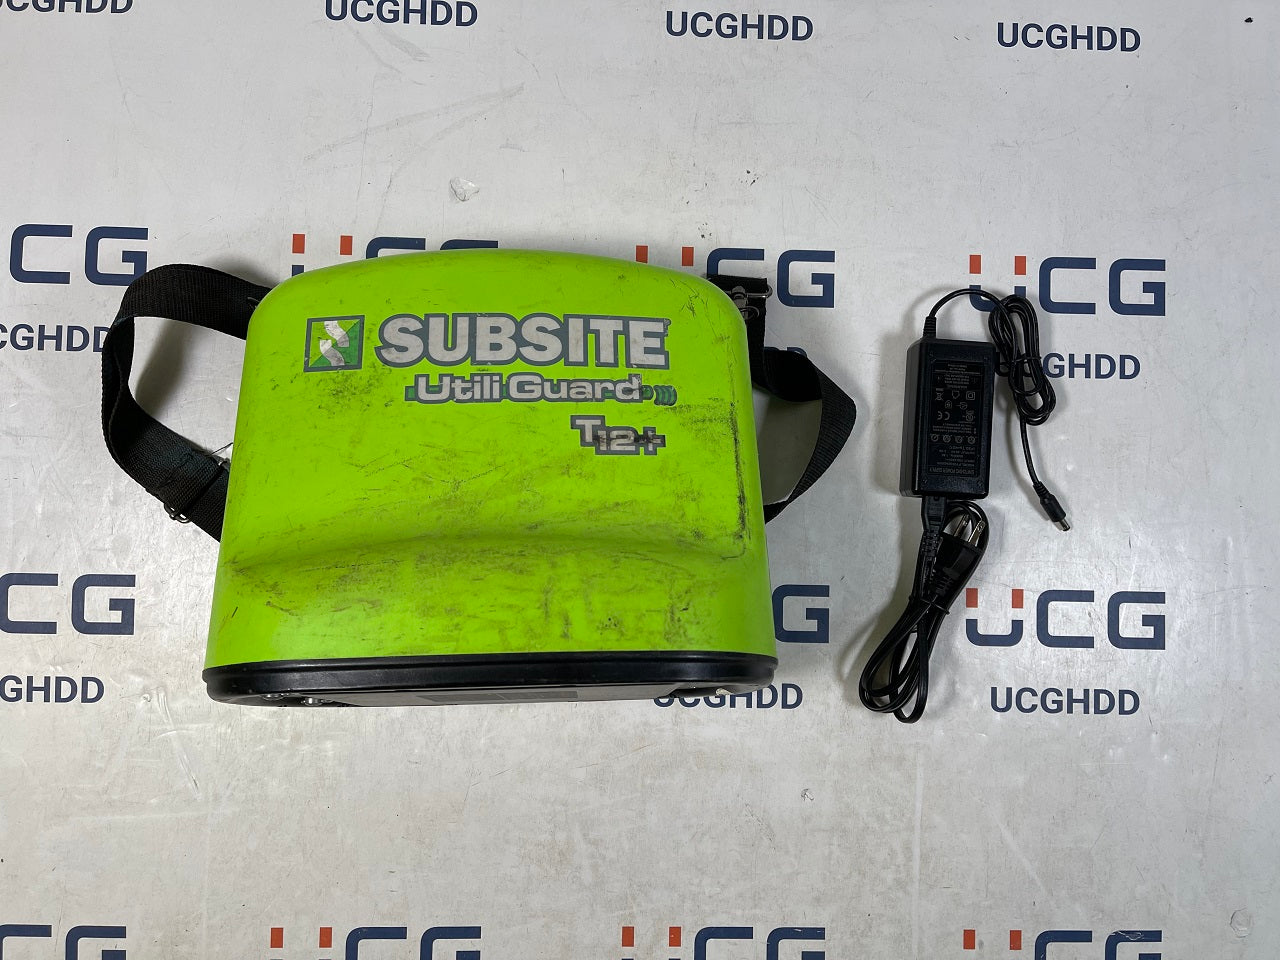 Used Subsite Utiliguard Plus Advanced & T12 Plus Kit. Stock number: U309